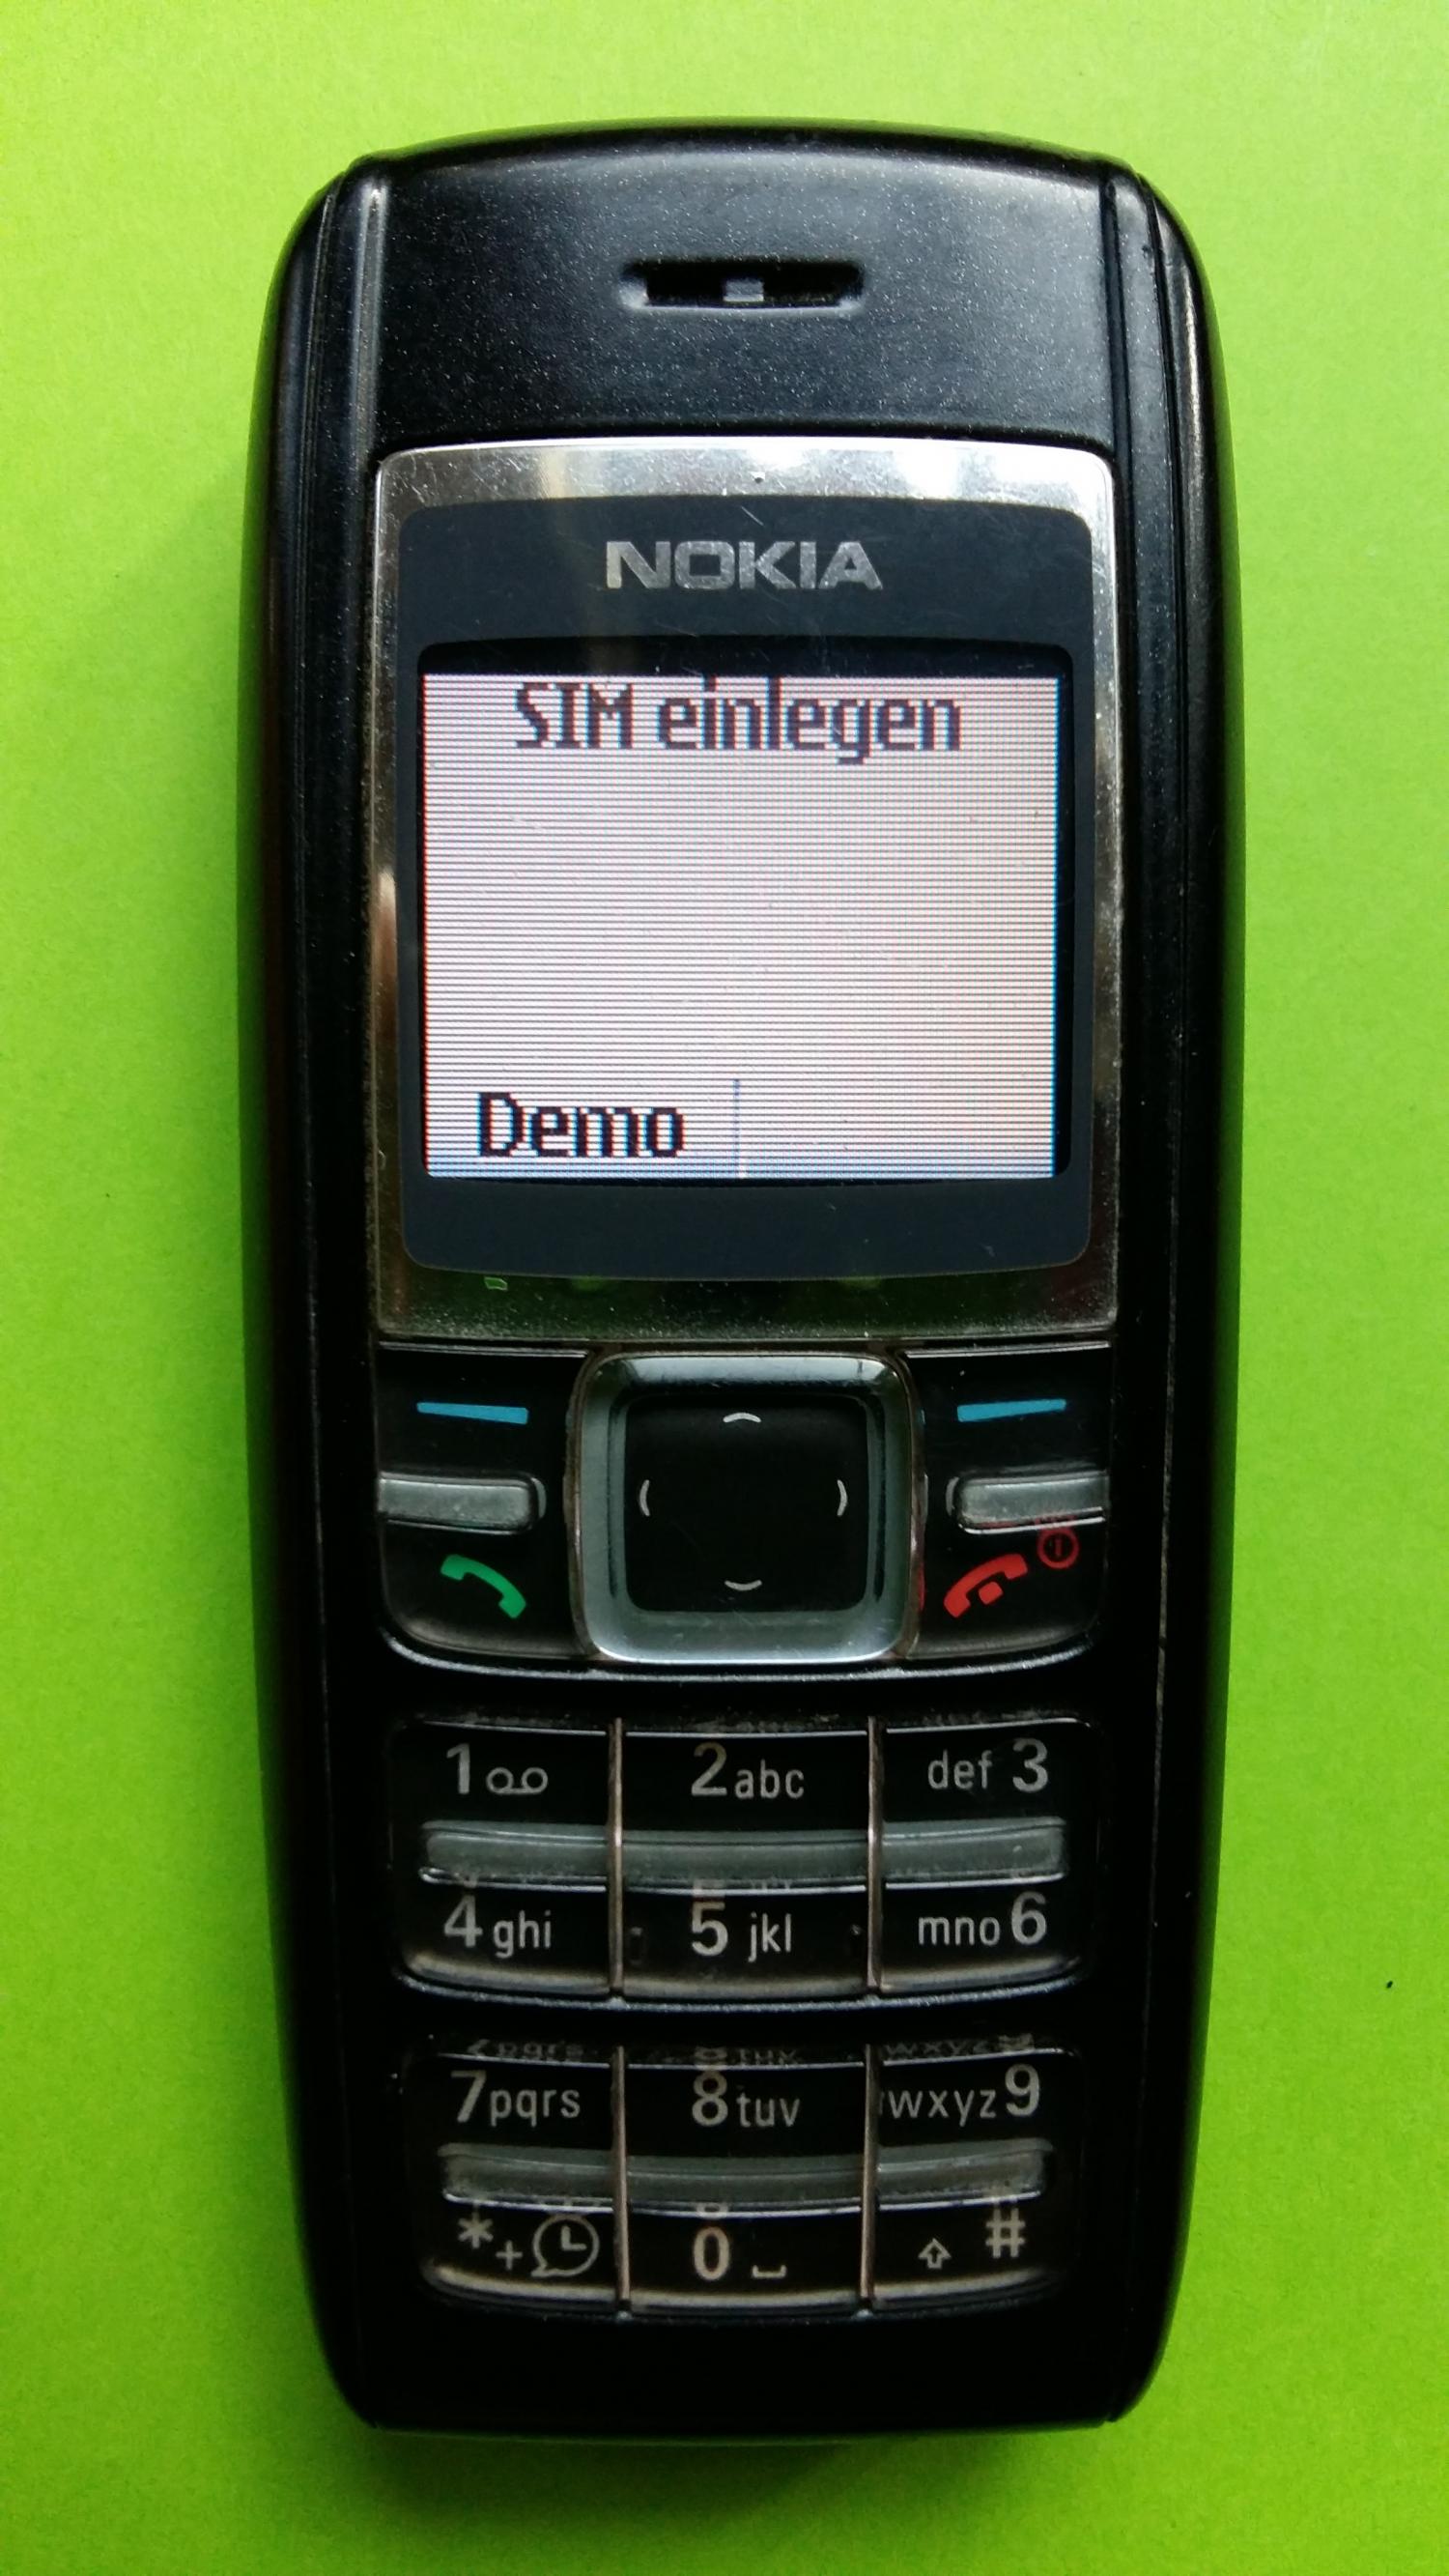 image-7300711-Nokia 1600 (3)1.jpg